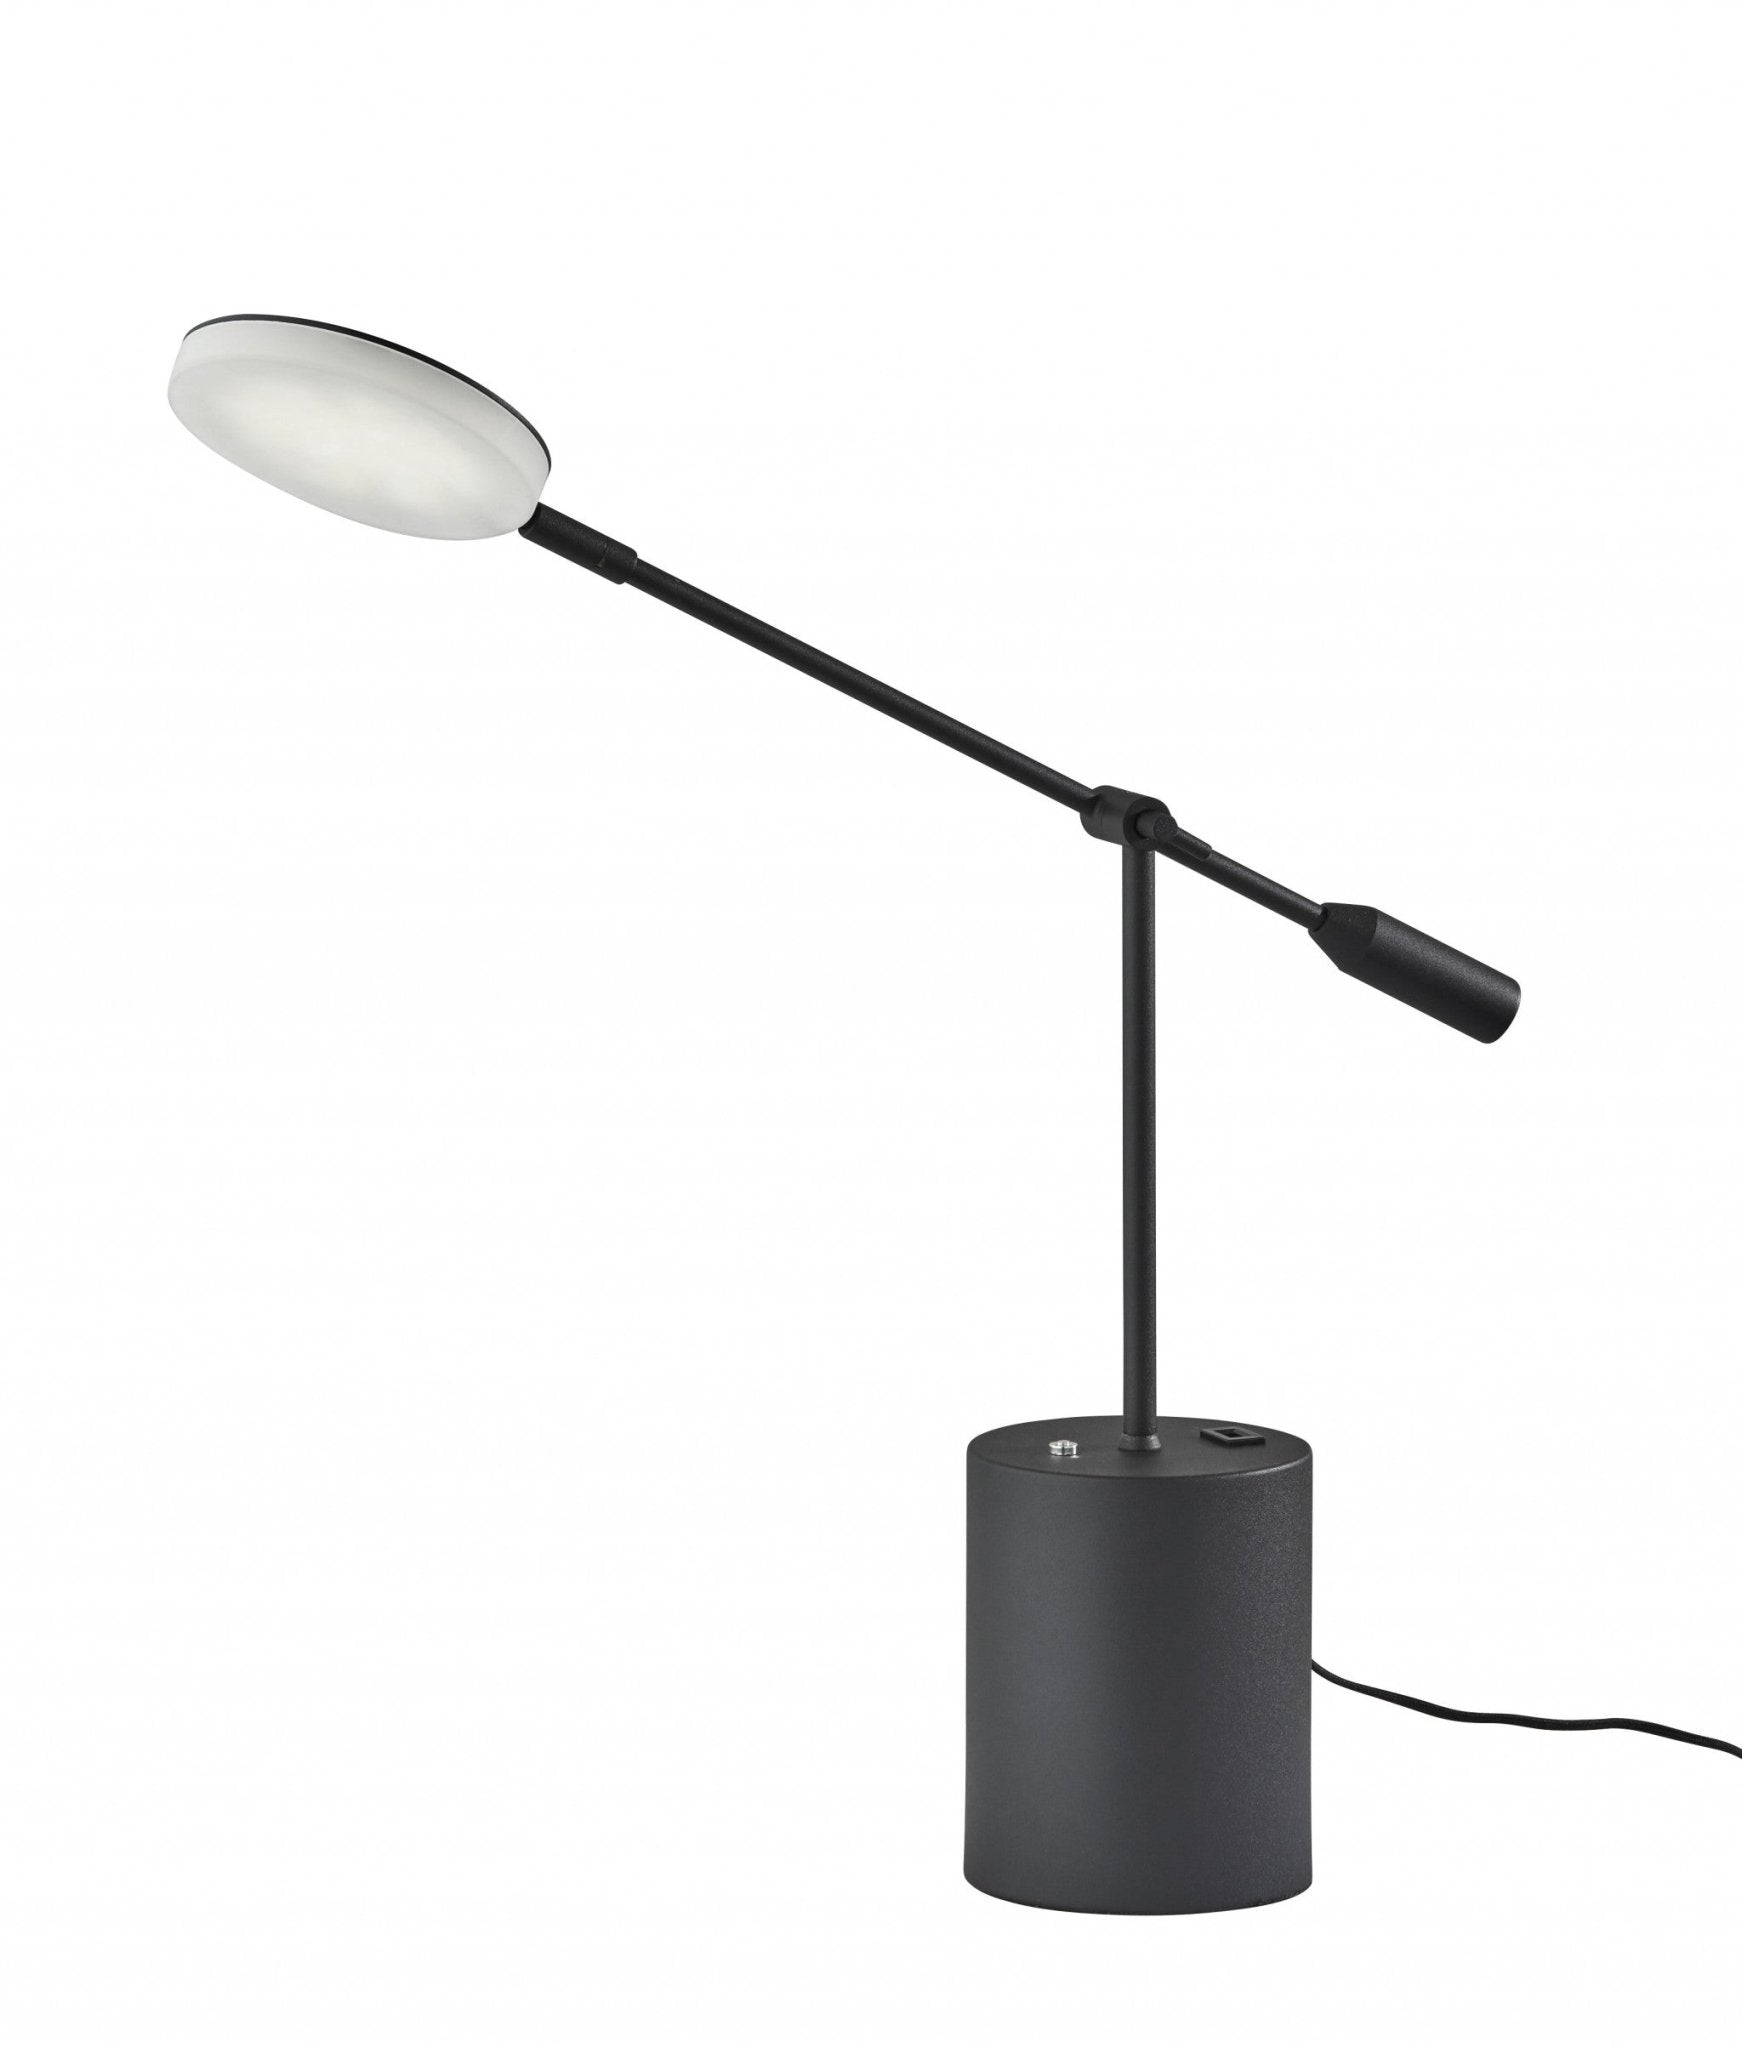 Black-Metal-Saucer-Led-Adjustable-Desk-Lamp-Table-Lamps